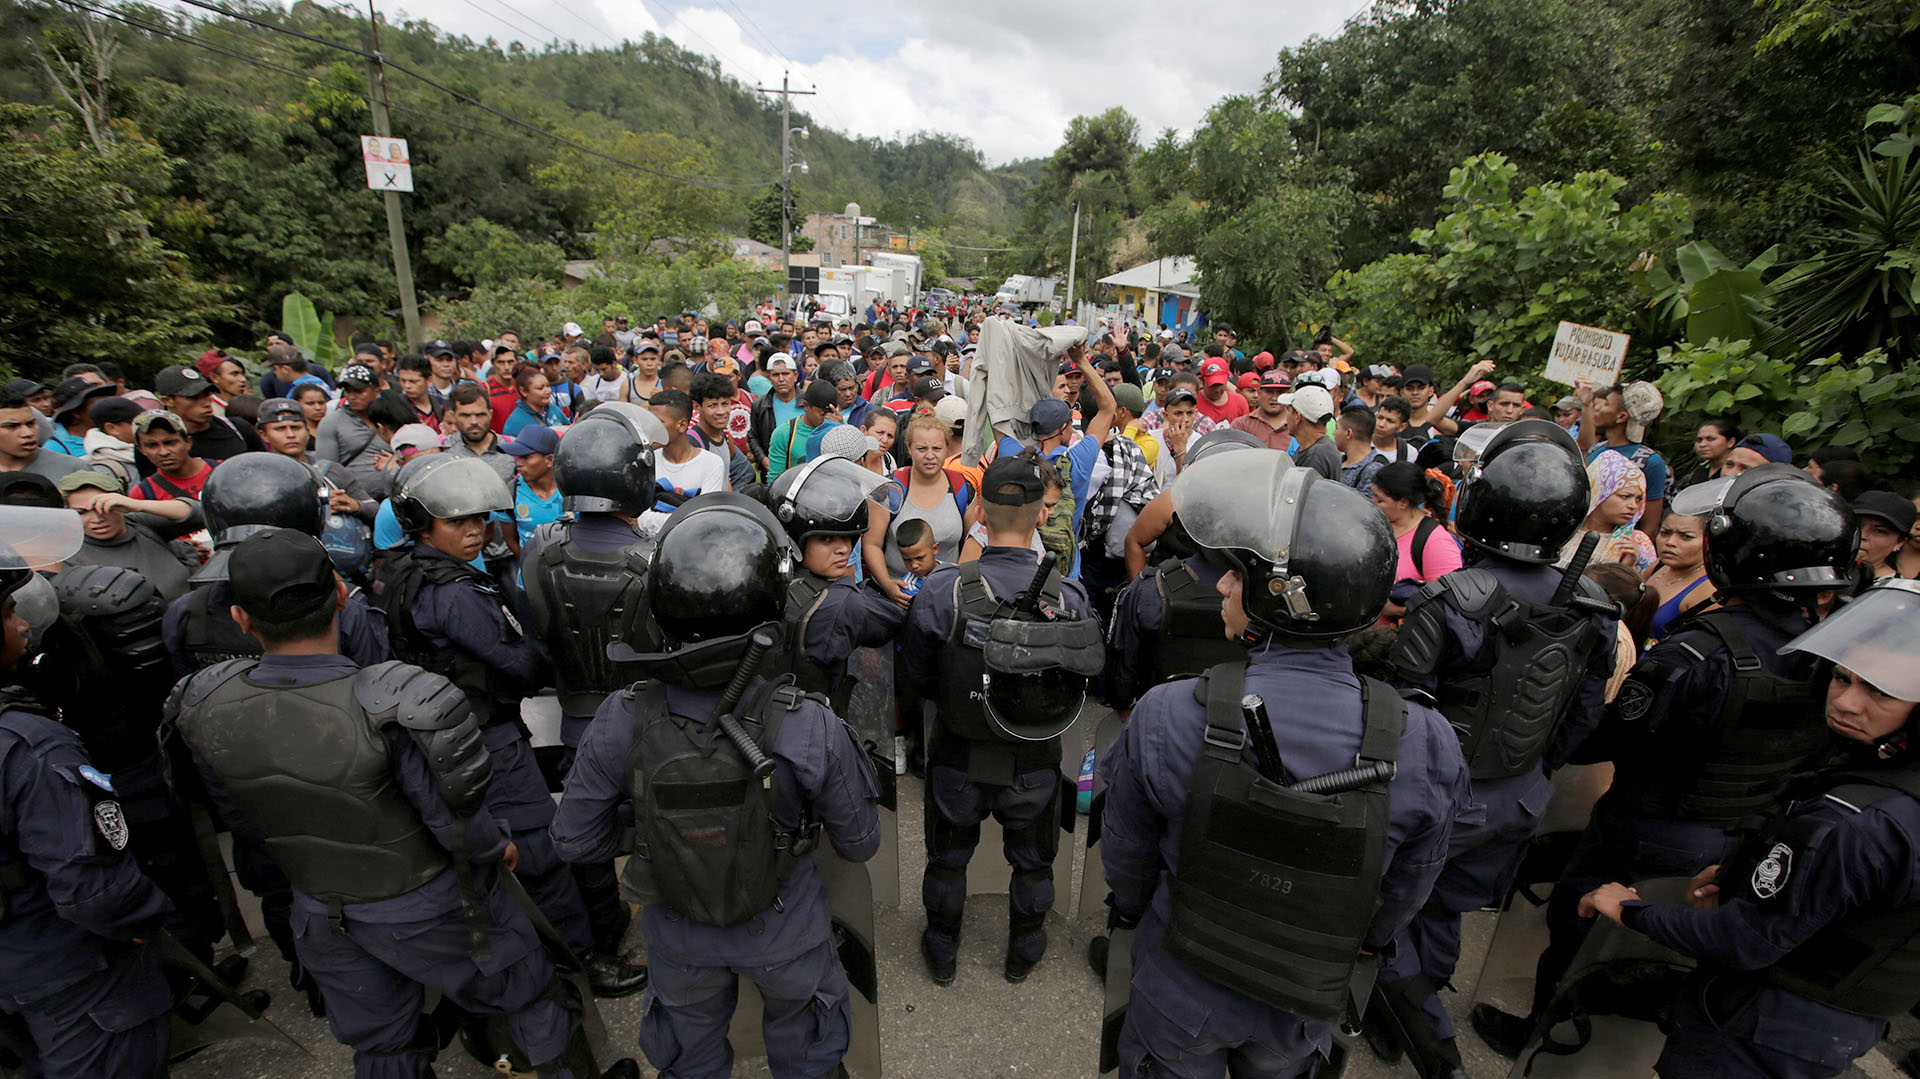 Cuerpos policiacos intentado contener el paso de la caravana de migrantes que partió de Honduras rumbo a EEUU (Foto: Reuters)